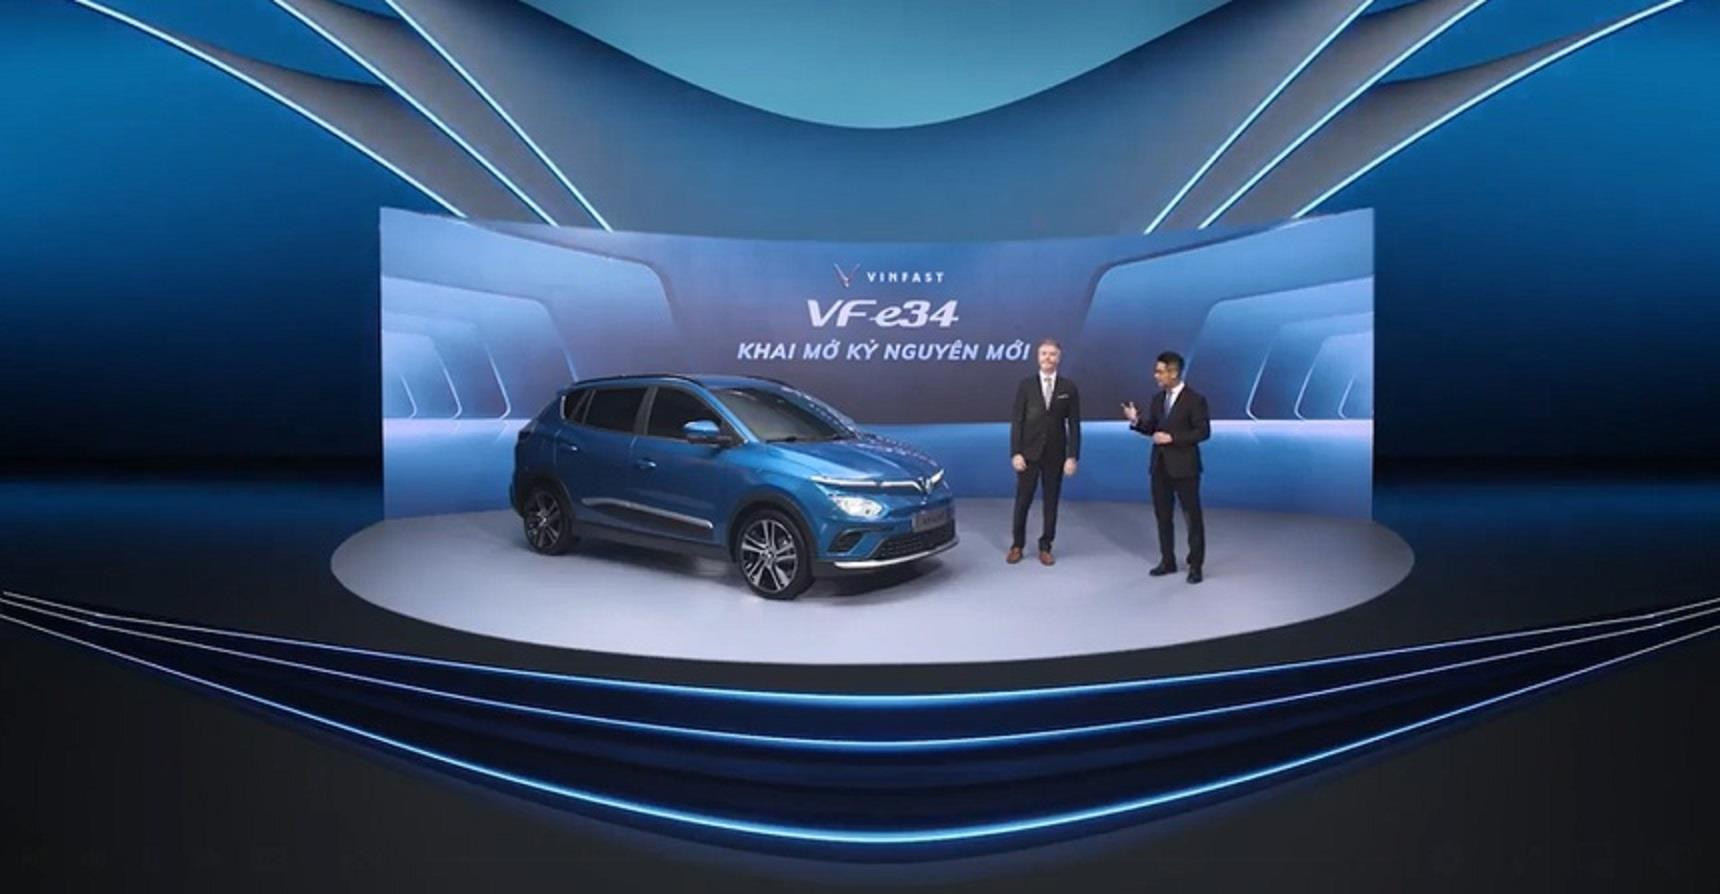 Ra mắt mẫu ô tô điện đầu tiên của Việt Nam - VinFast VF e34: Bảo hành 10 năm  - 1